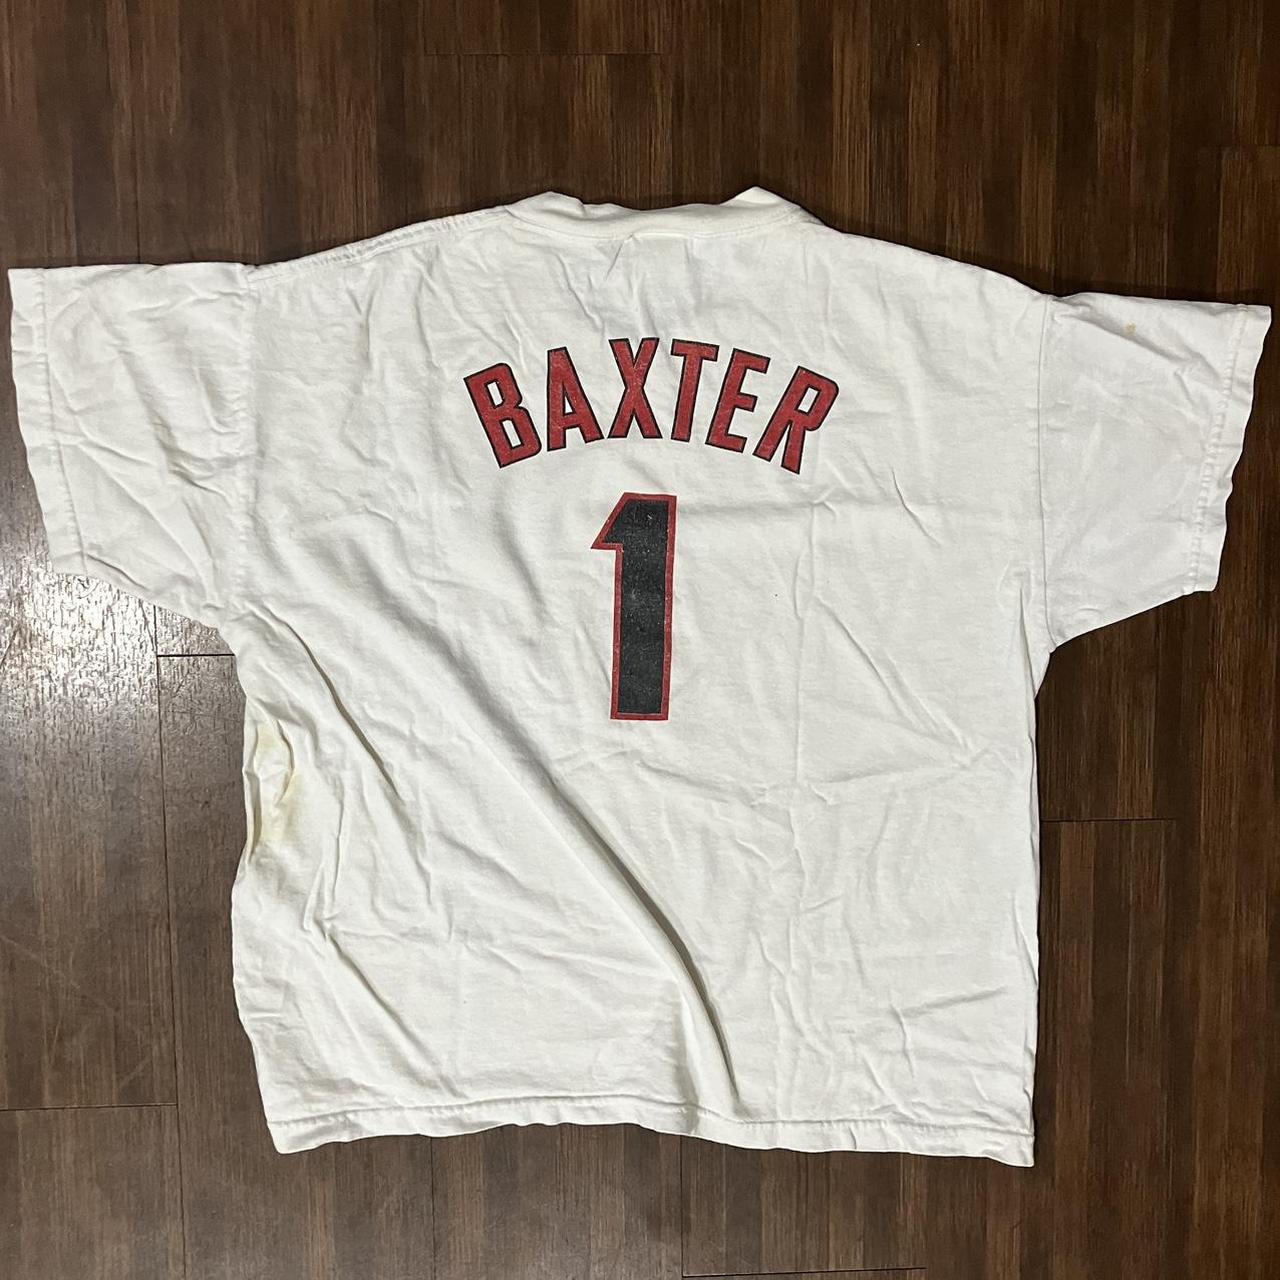 Arizona Diamondbacks DBacks Youth T-Shirt. Size M Autographed By Baxter